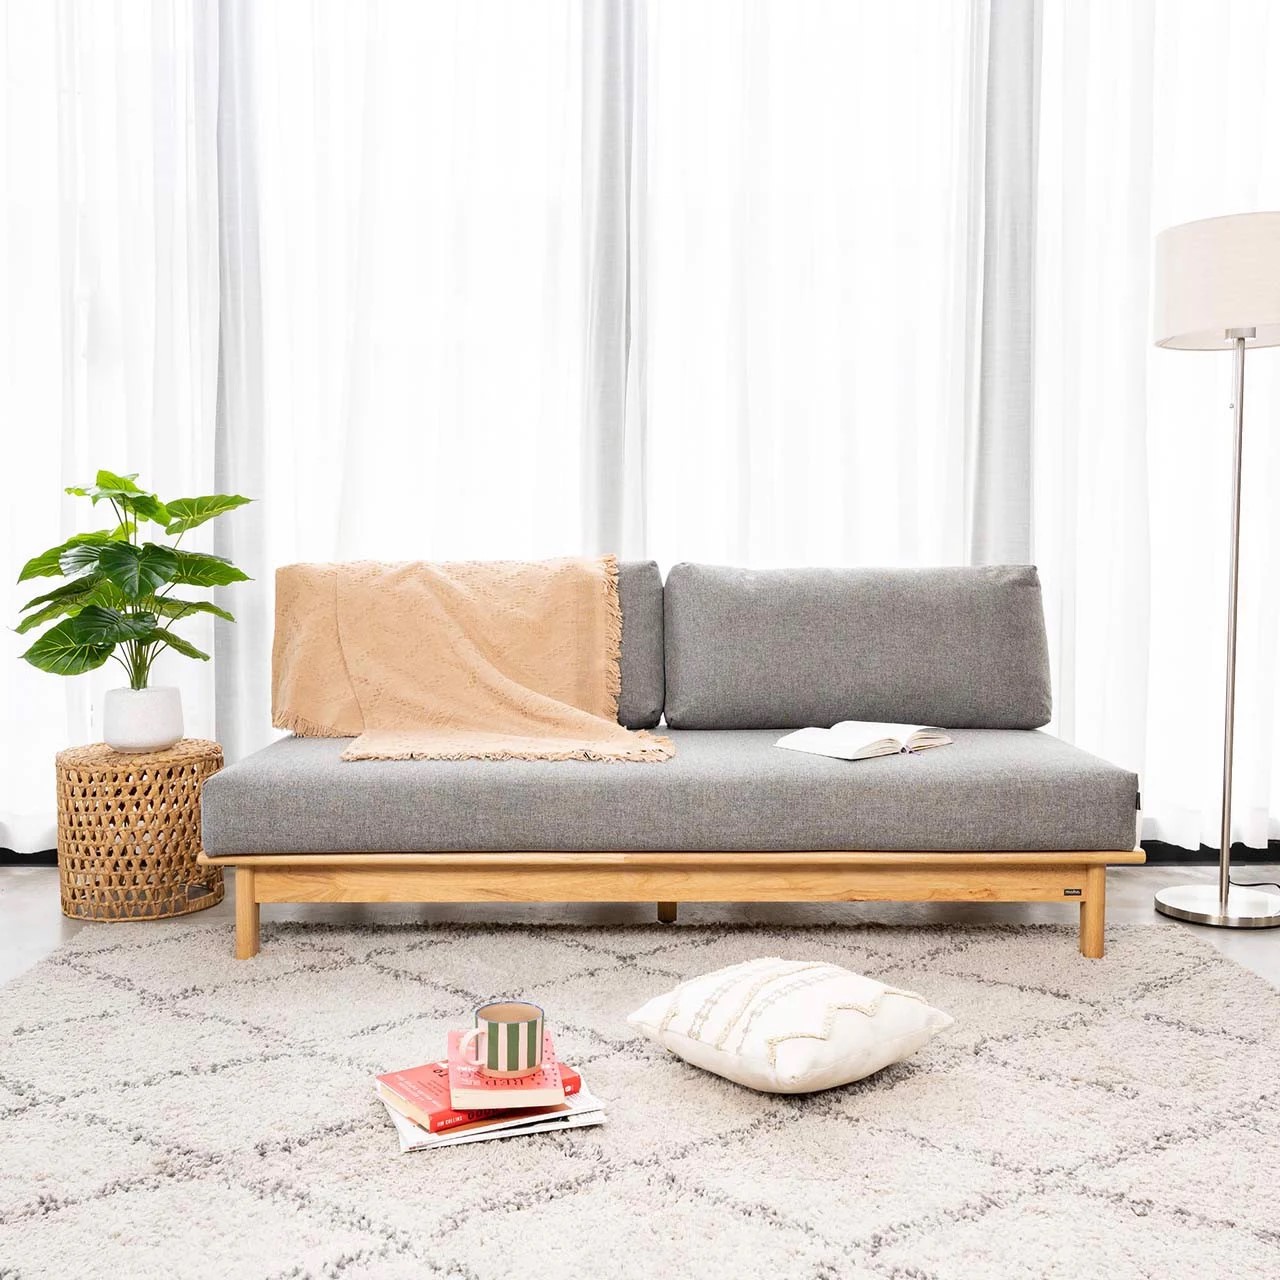 Tại sao nên chọn Sofa gỗ nhỏ gọn cho căn phòng khách nhà bạn?